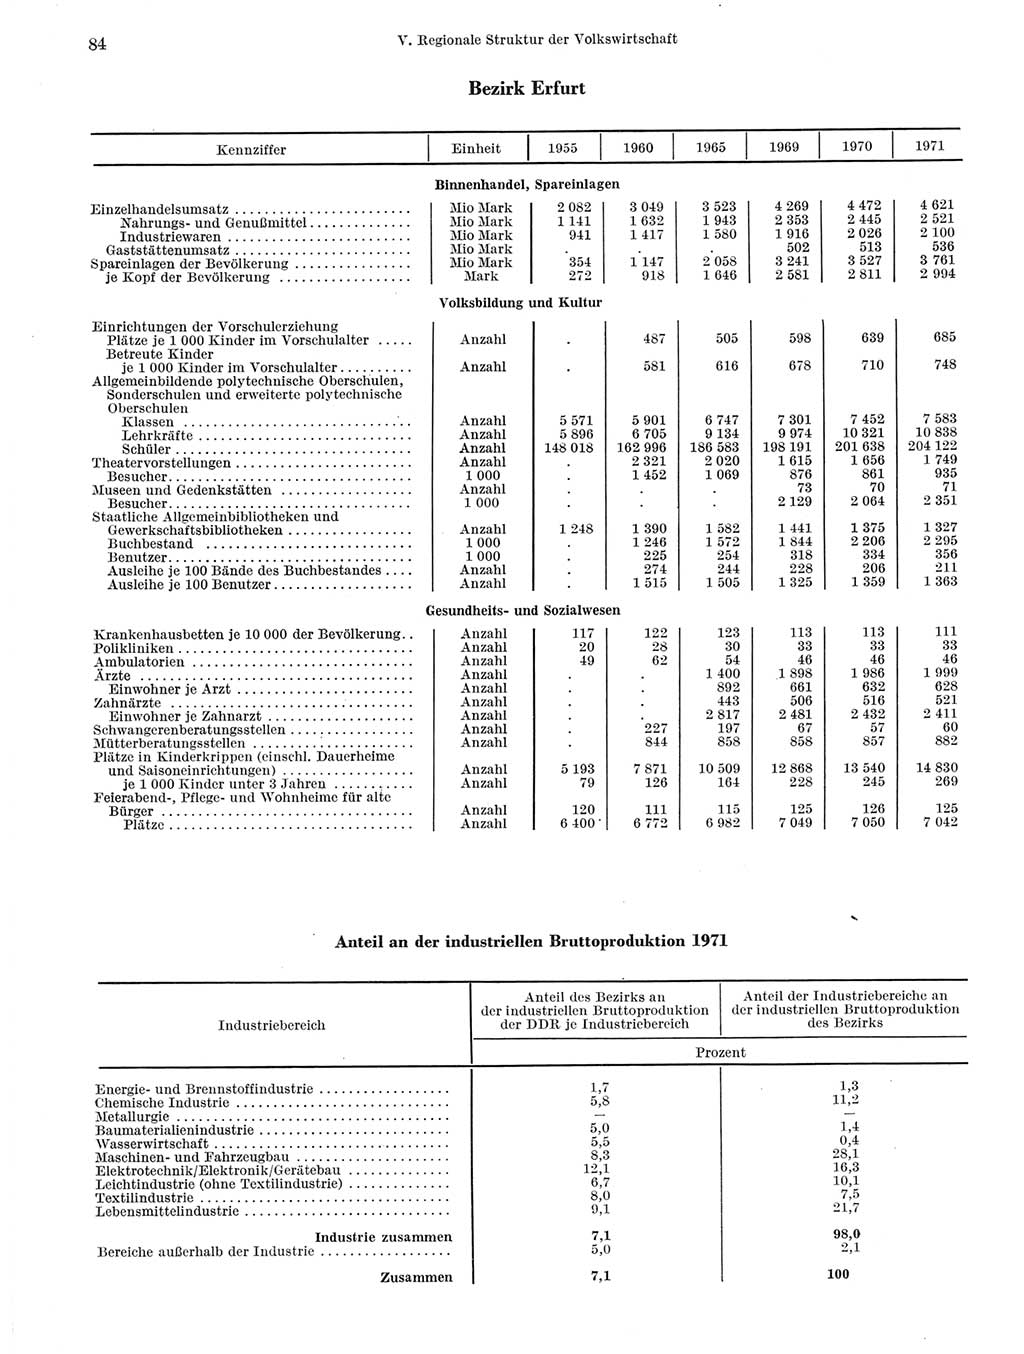 Statistisches Jahrbuch der Deutschen Demokratischen Republik (DDR) 1972, Seite 84 (Stat. Jb. DDR 1972, S. 84)